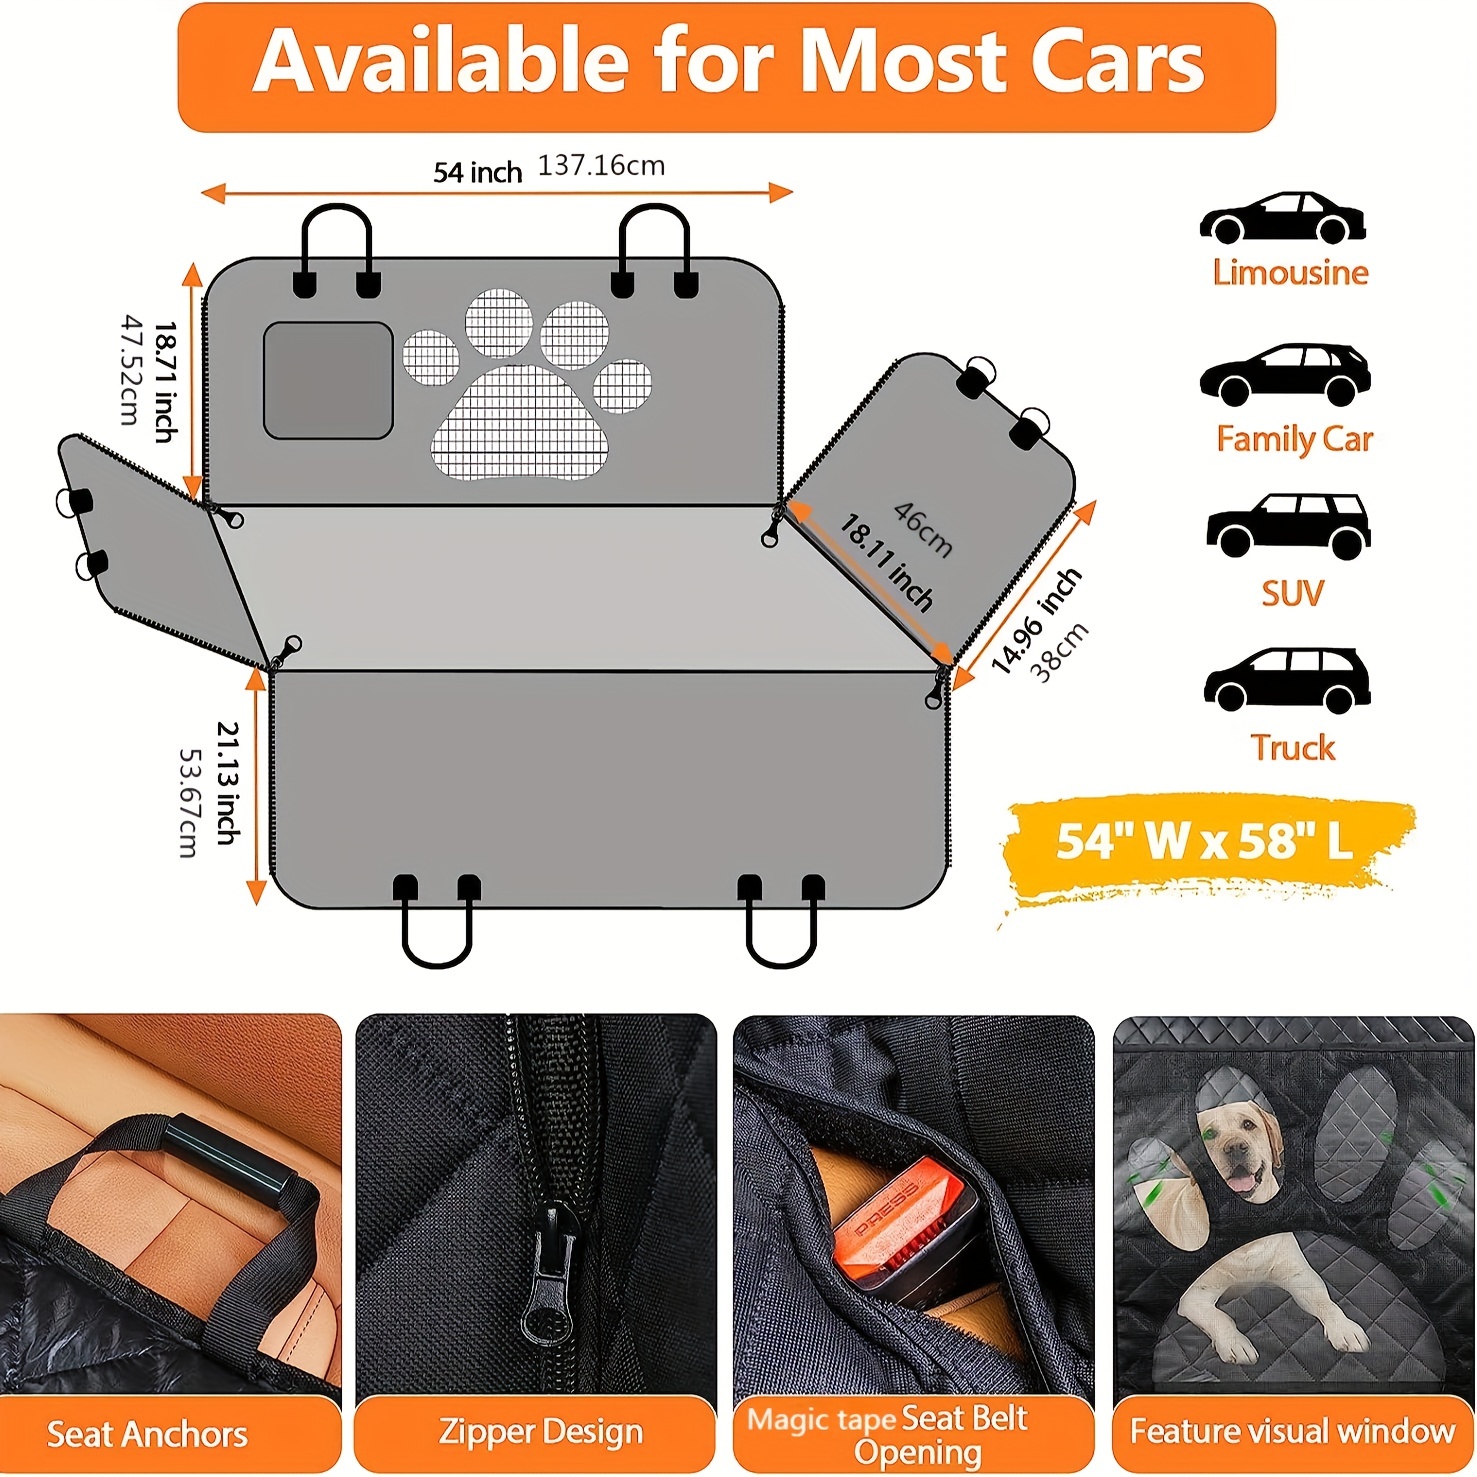 Asiento de coche para perros, cubierta, banco para parte trasera gratis.  Hamaca convertible con forma, accesorio para coches, SUV, camiones